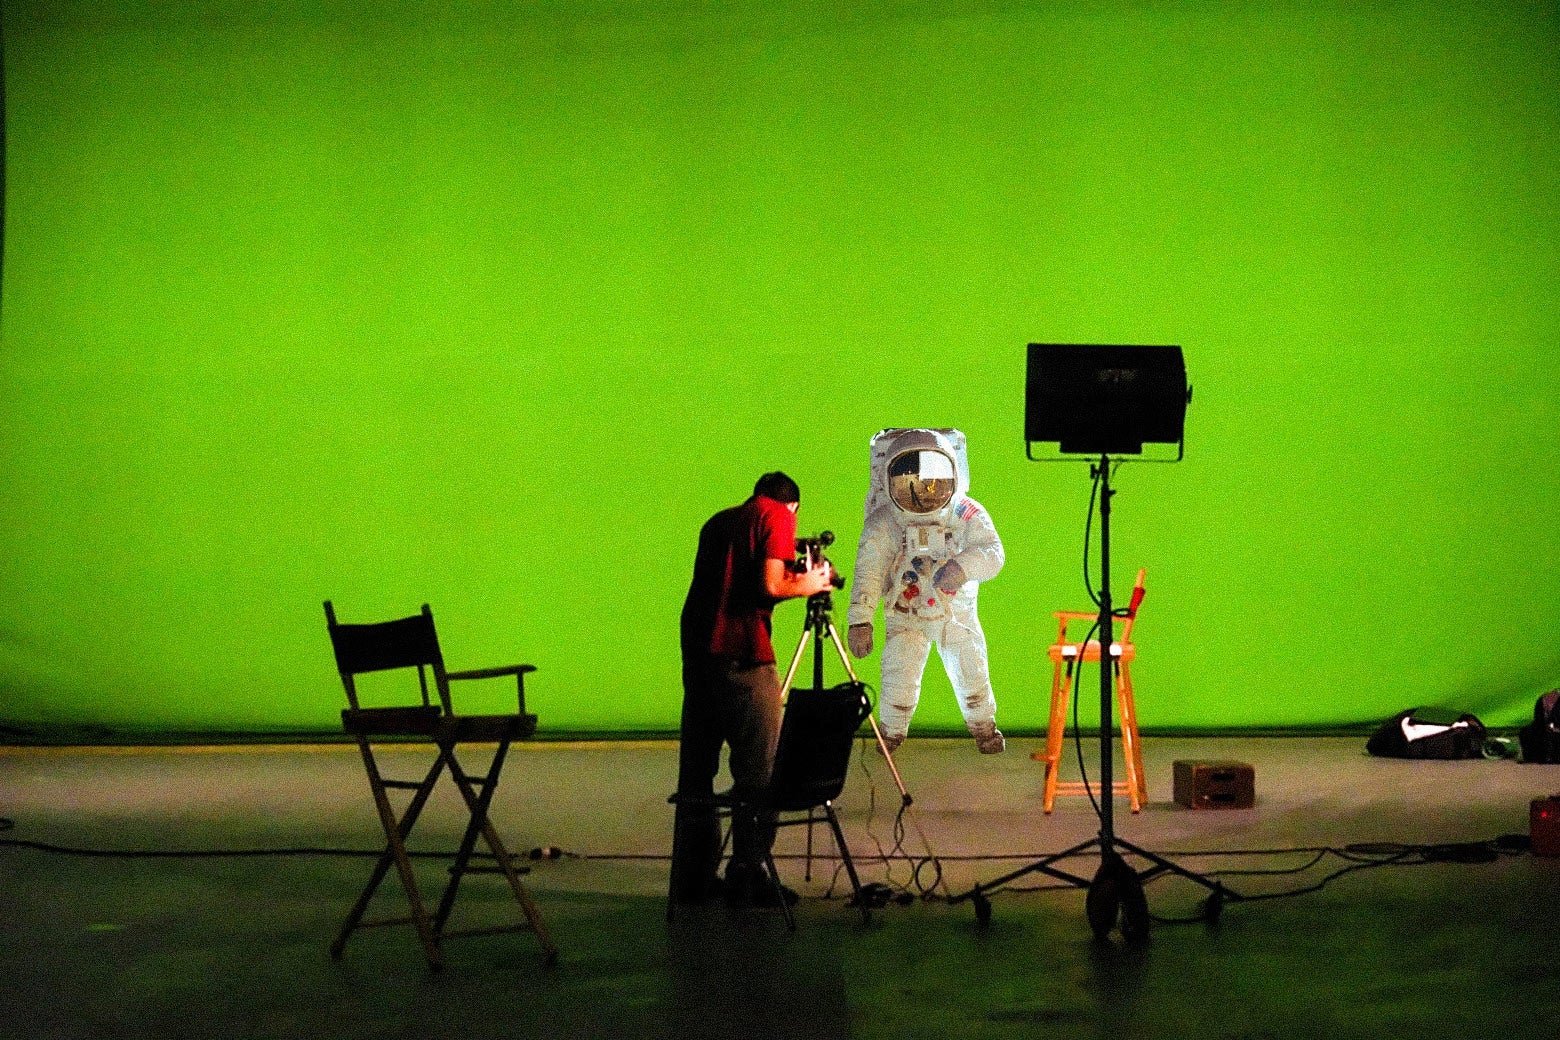 An astronaut standing on a green screen.